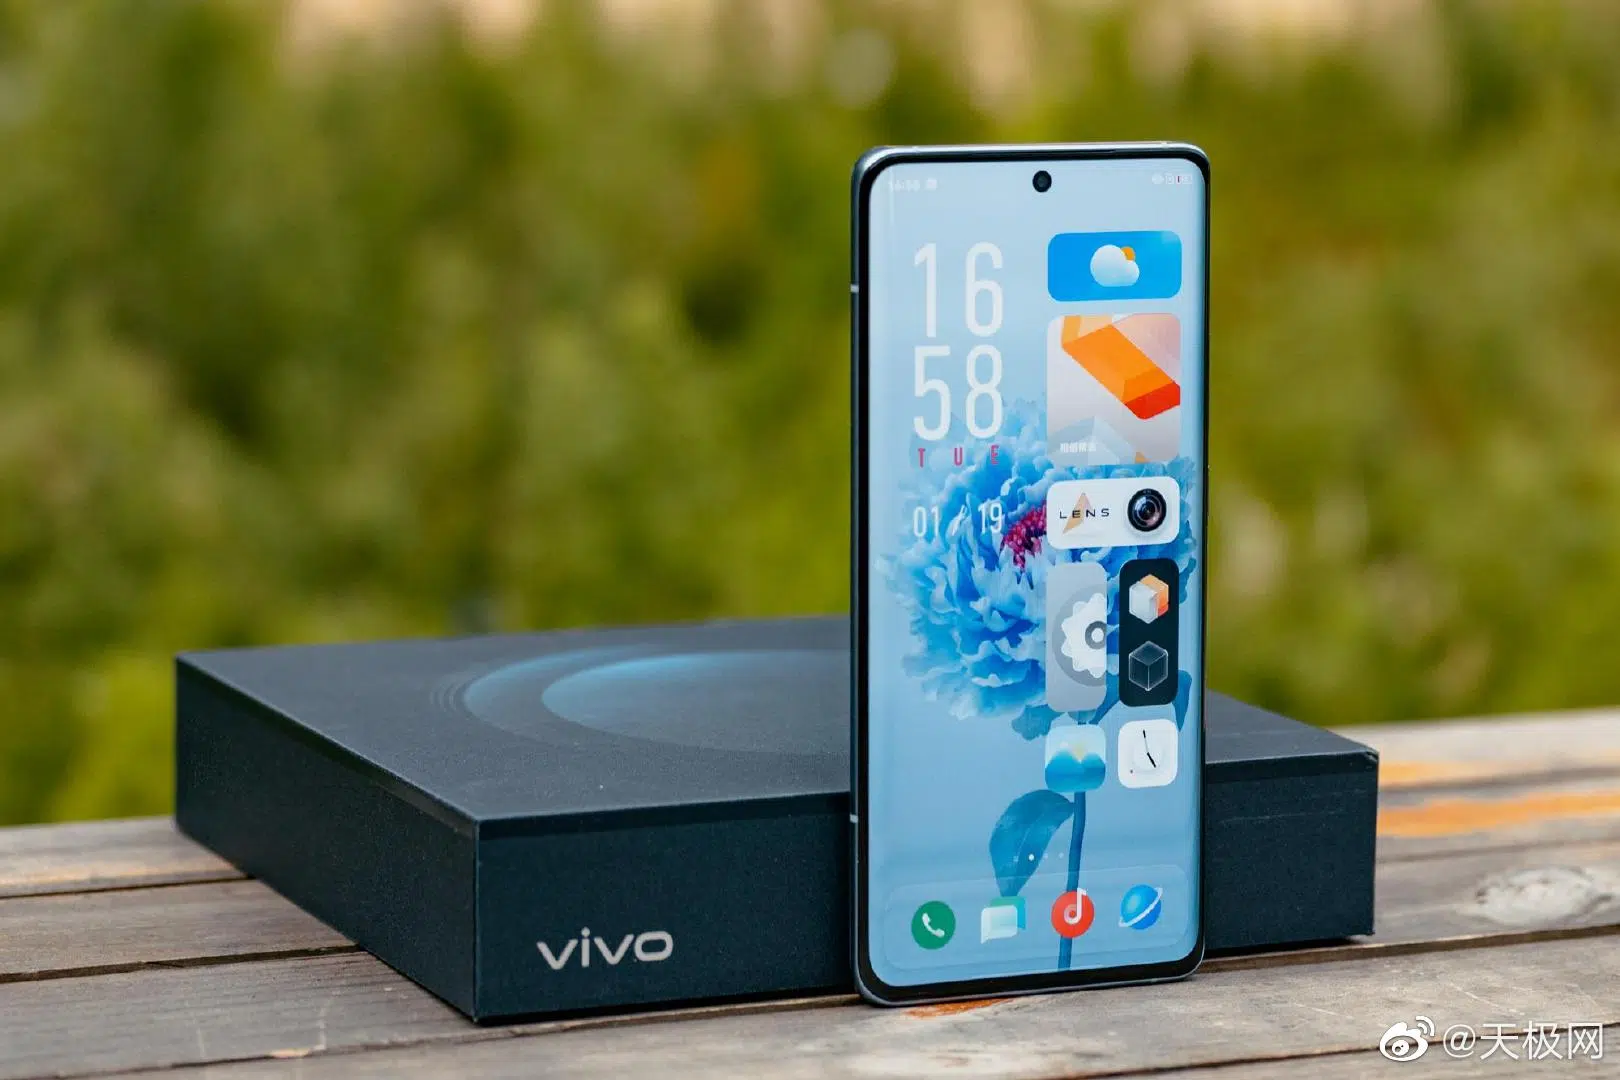 Vivo X60 Pro+ ra mắt với Snapdragon 888, cụm 4 camera
cực khủng, màn hình 120Hz, sạc nhanh 55W, giá từ 17.8 triệu
đồng